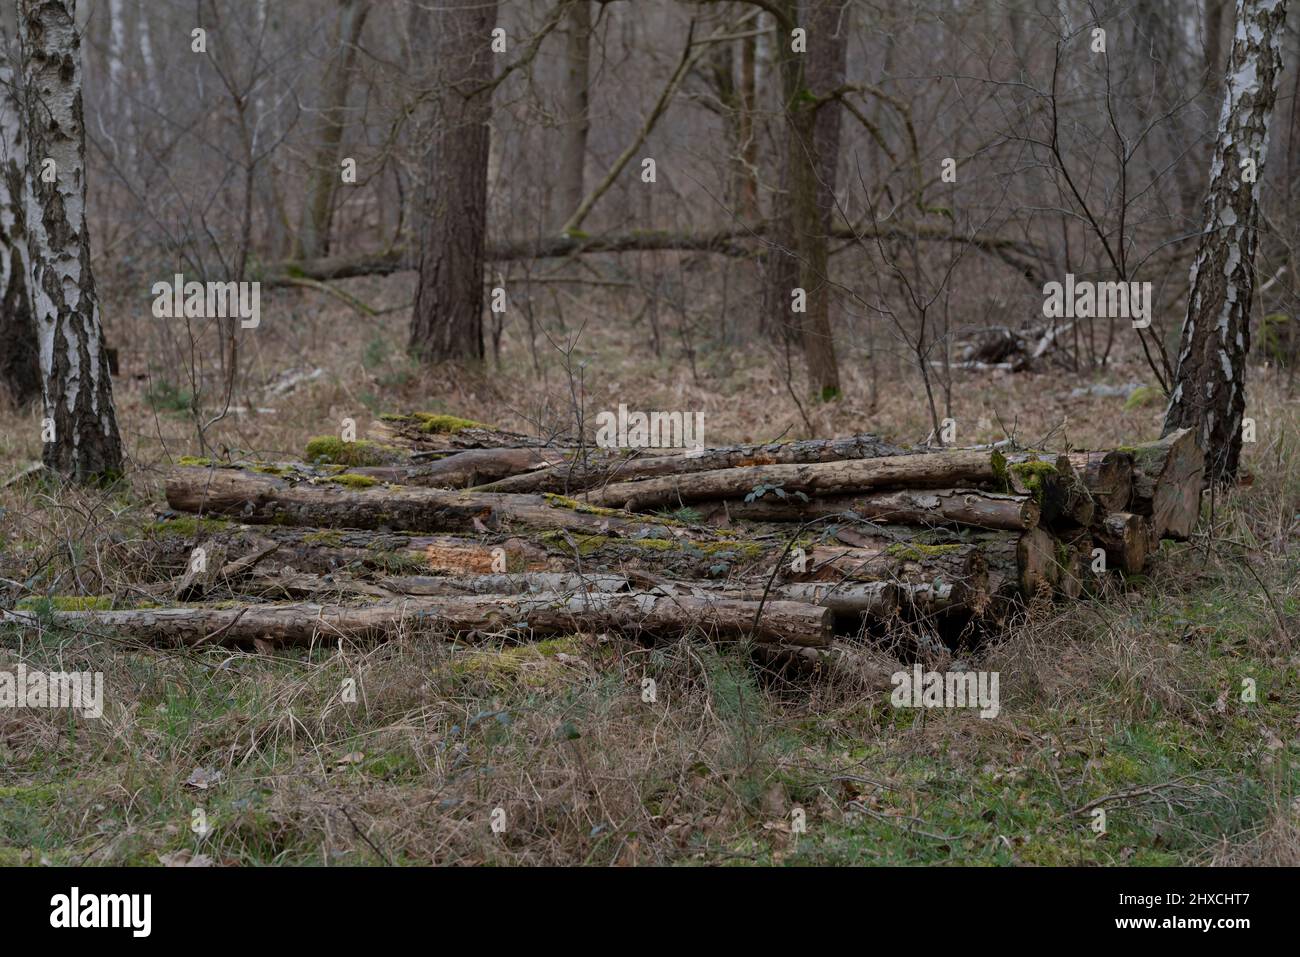 Troncs d'arbres d'arbres abattus dans une forêt qui ont été simplement laissés derrière, le gaspillage de ressources Banque D'Images